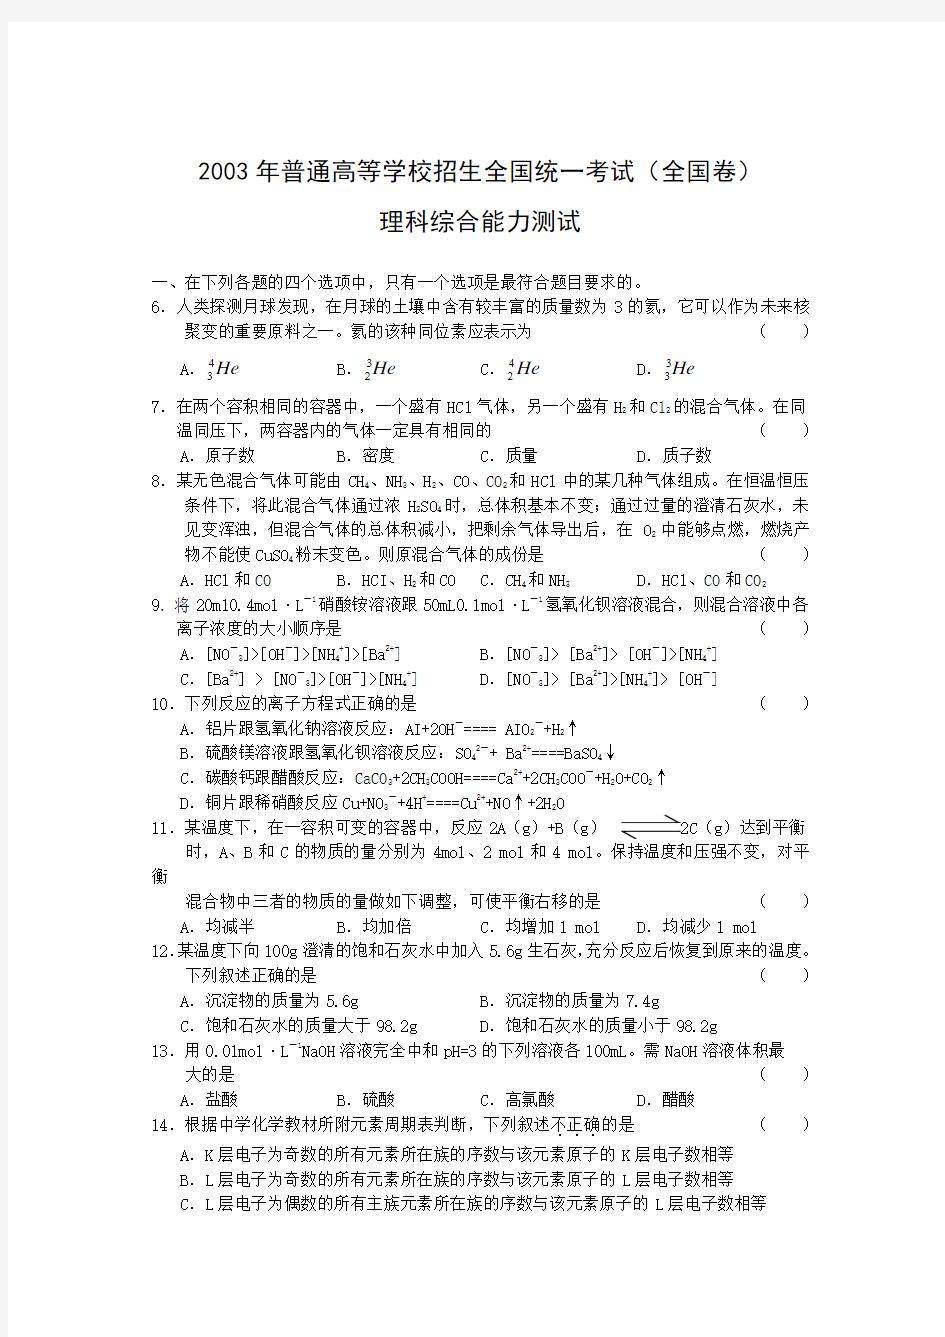 2003年高考试题——理综(北京卷)化学部分